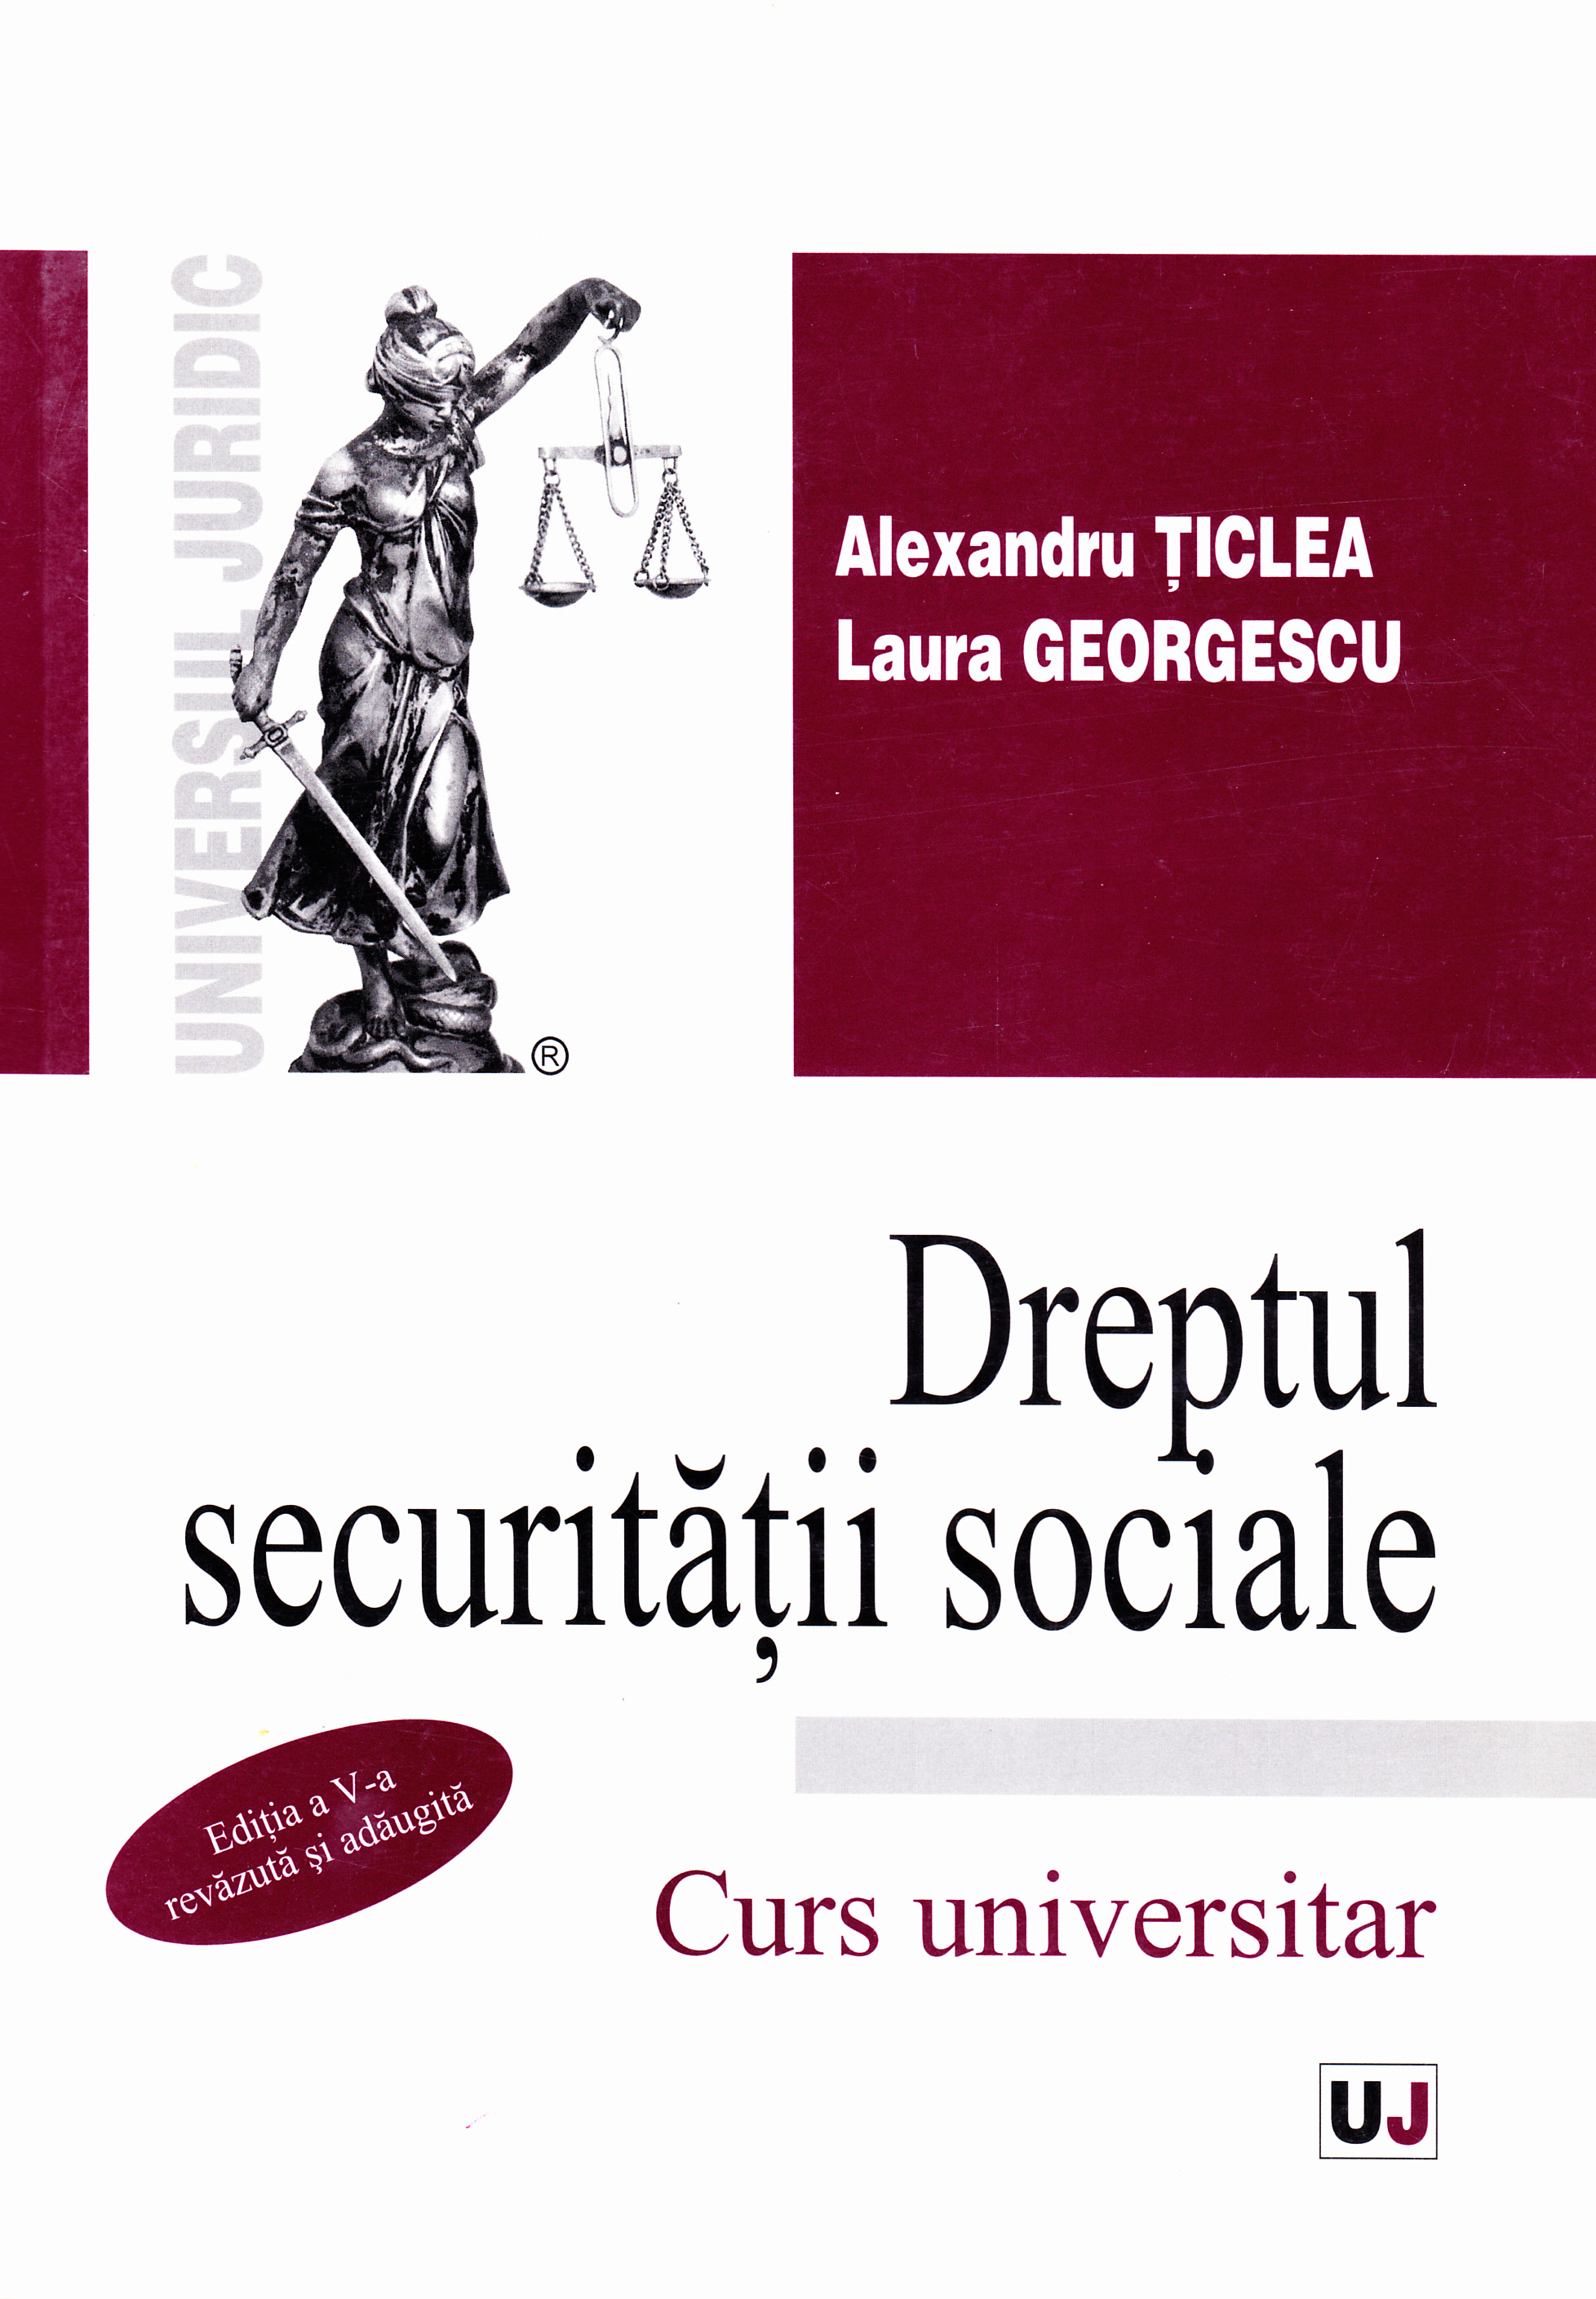 Dreptul securitatii sociale ed 5 - Alexandru Ticlea